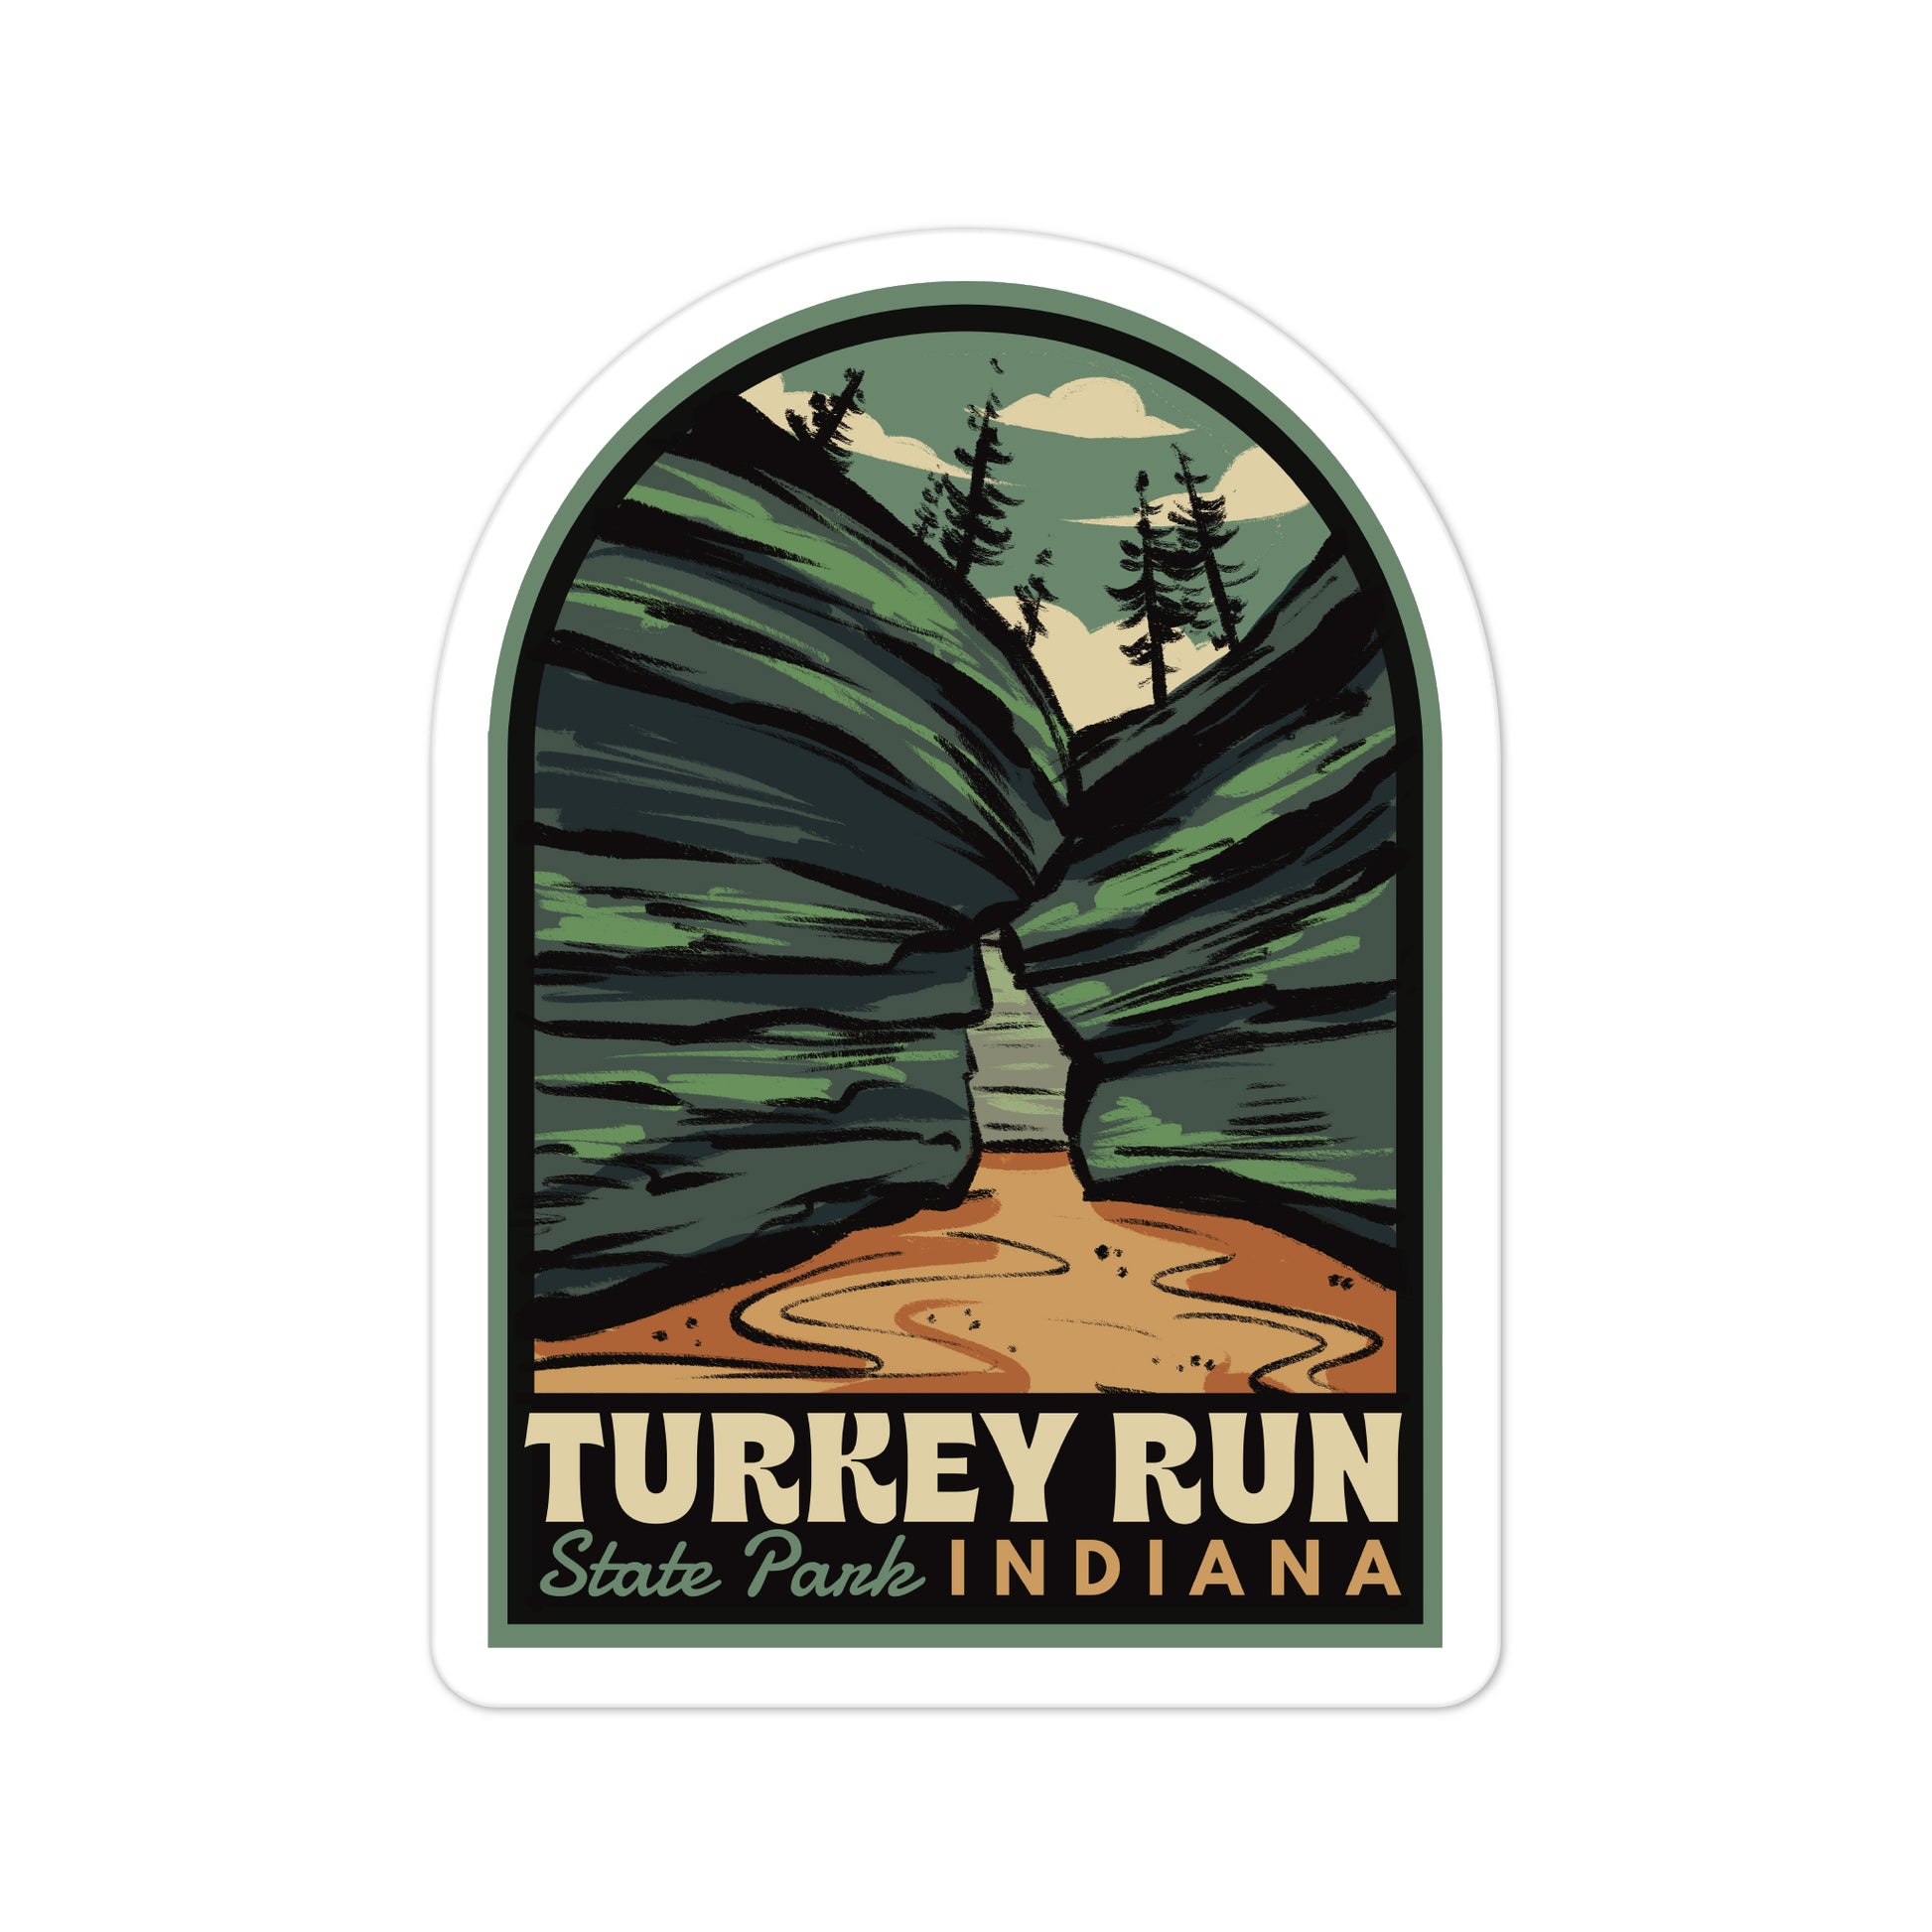 A sticker of Turkey Run State Park